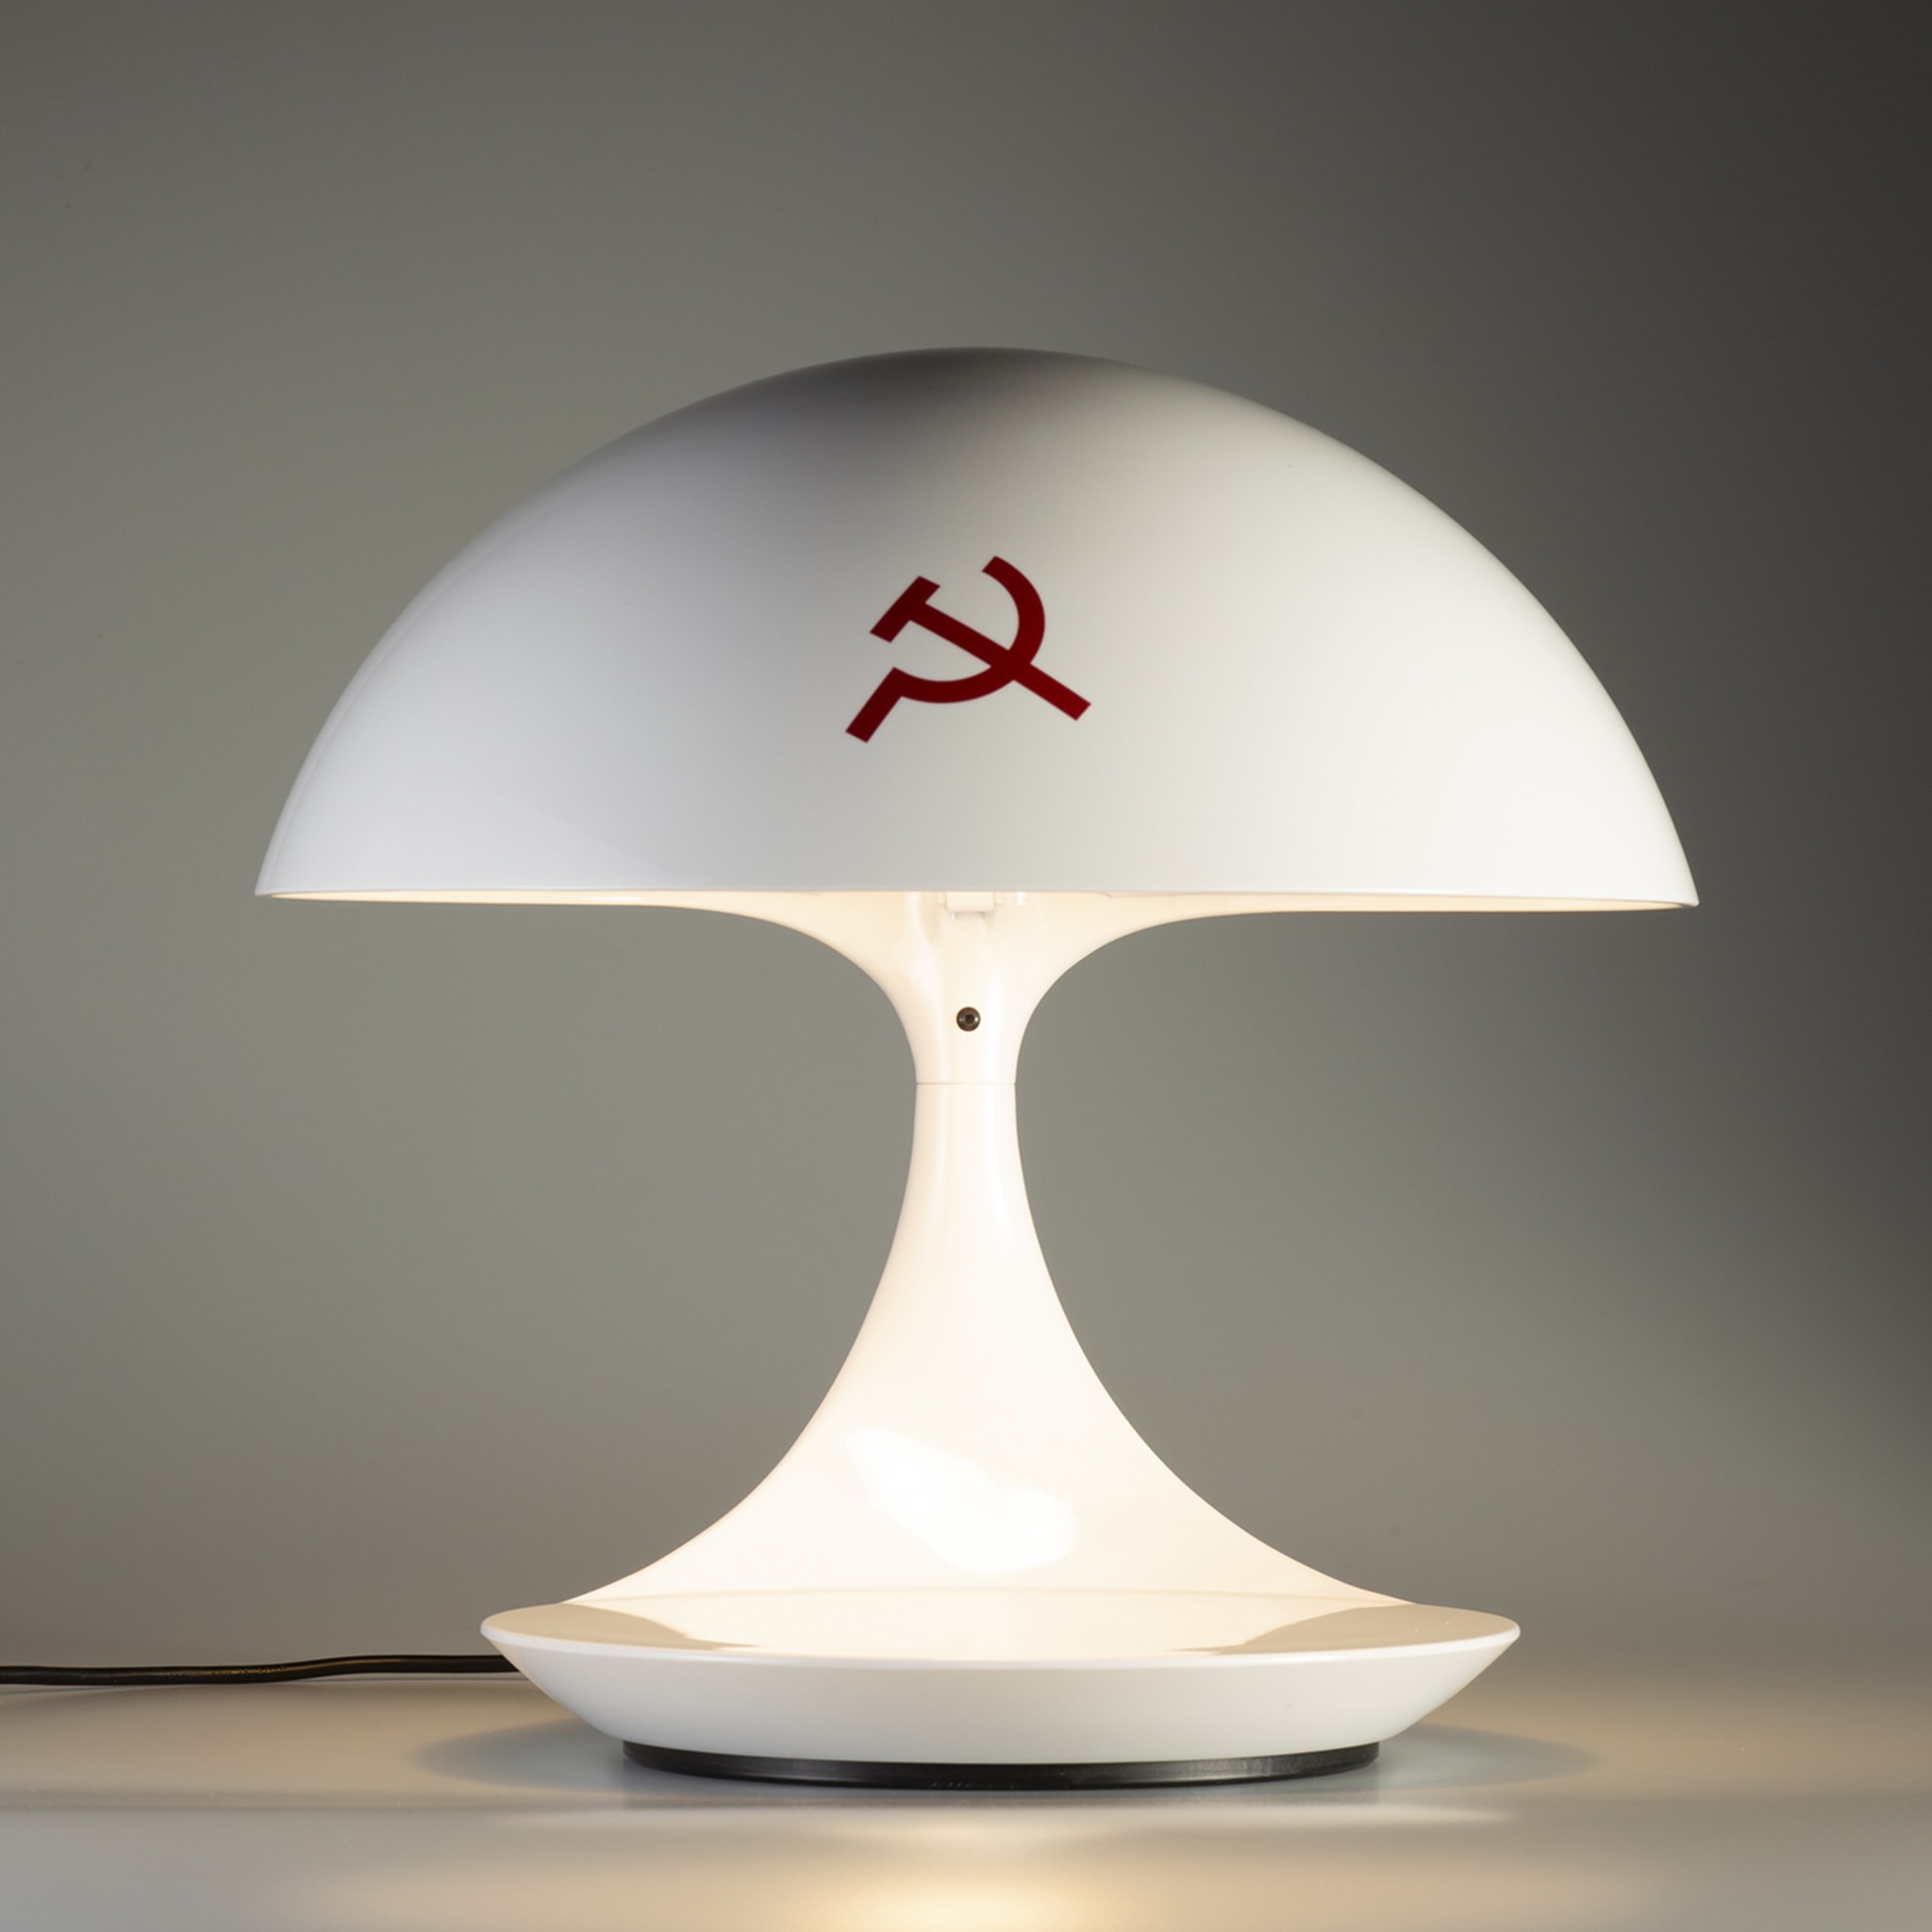 Cobra Texture Pensando Al Comunismo Table Lamp by A. Mendini - Alternative view 3